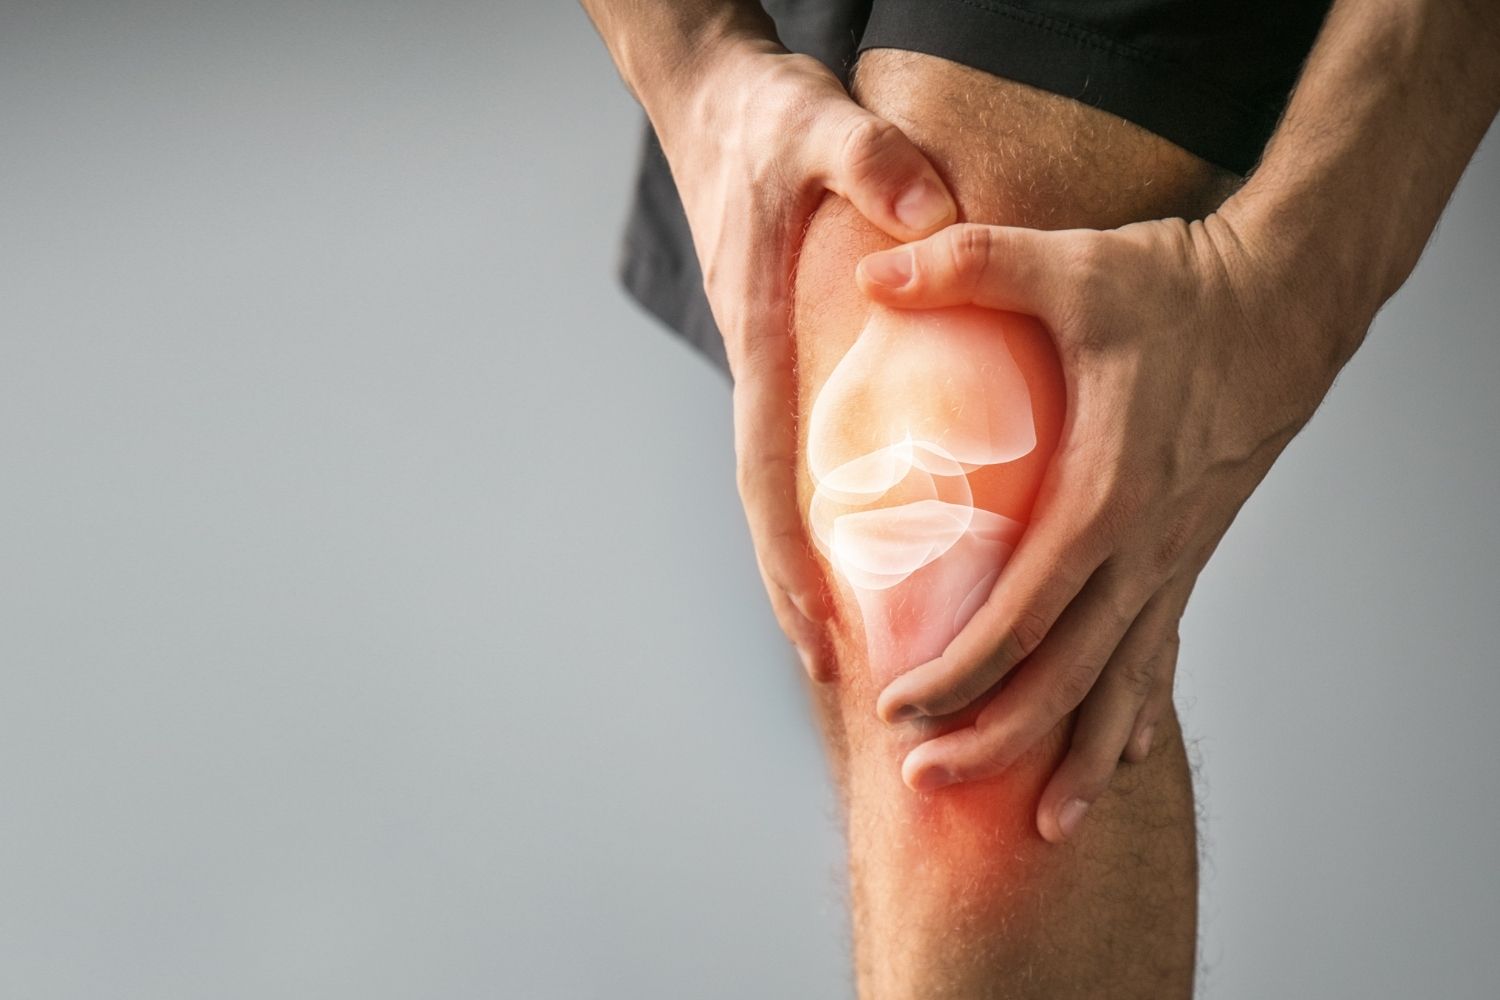 Knieschmerzen beim Training – Wie kann ich diese vermeiden?